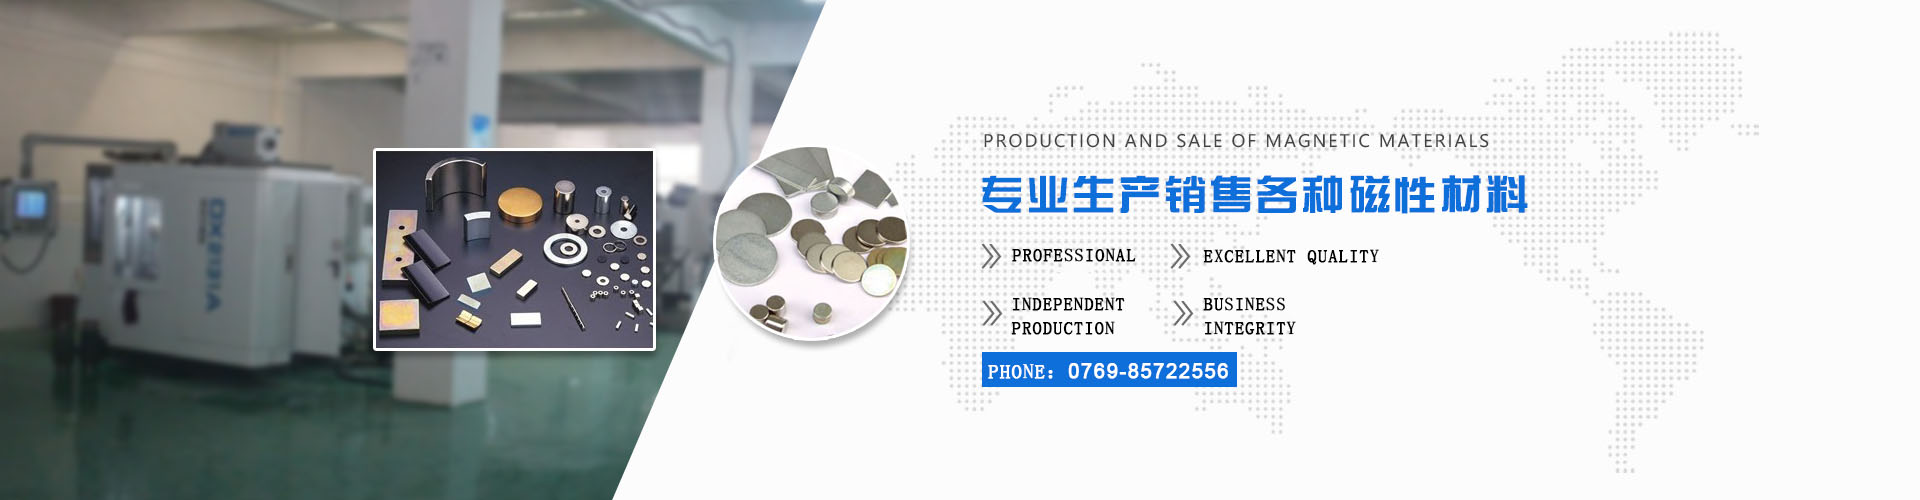 Dongguan Yuechuan Magnetic Industry Co., Ltd.